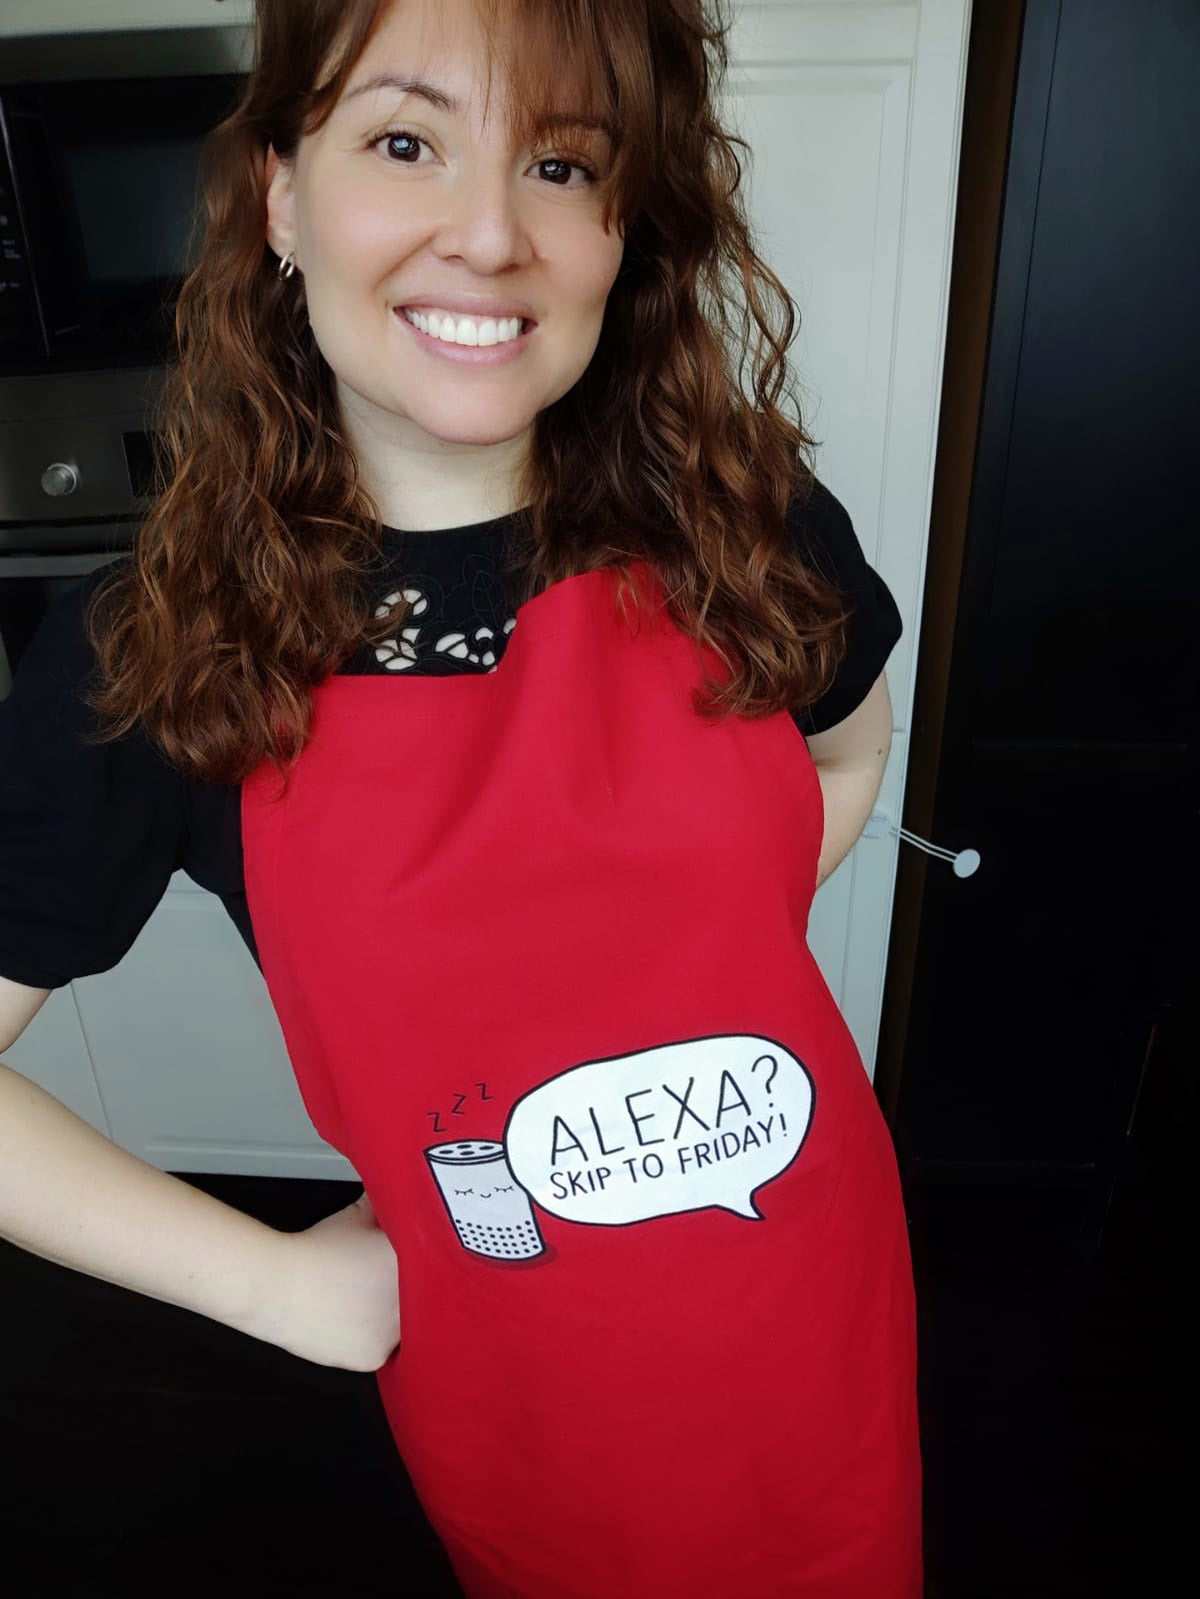 "Alexa? Skip to Friday!" - Kochschürze